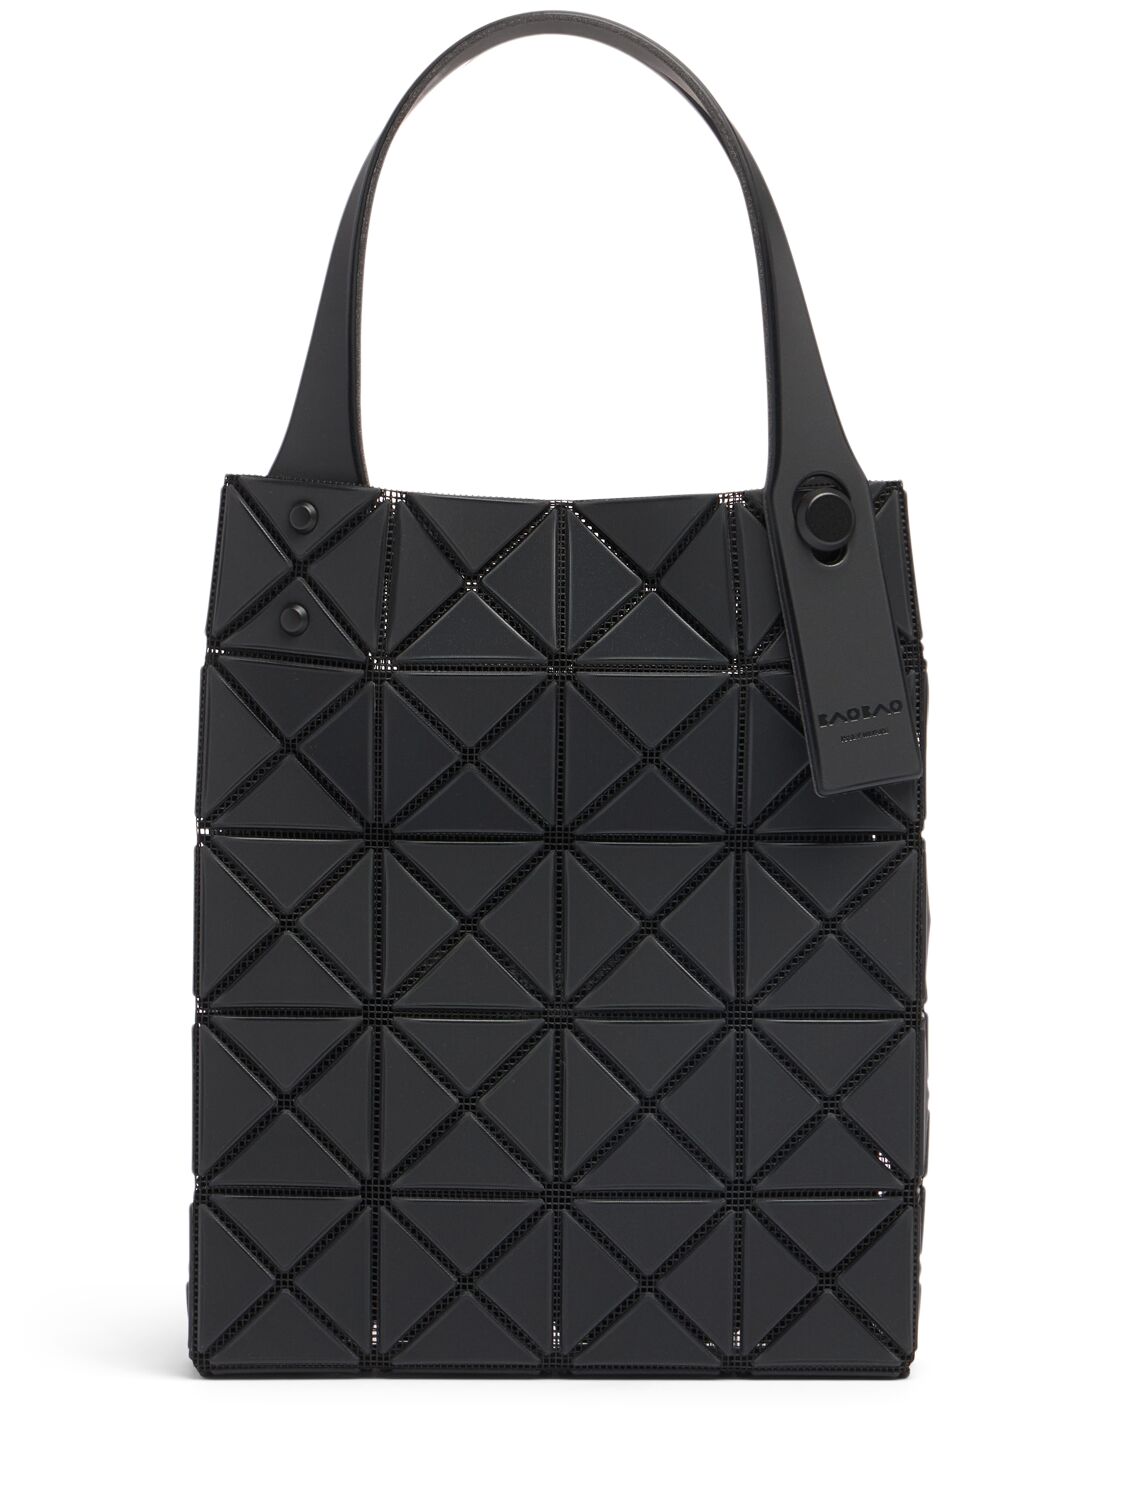 Bao Bao Issey Miyake Prism Plus Top Handle Bag In Black